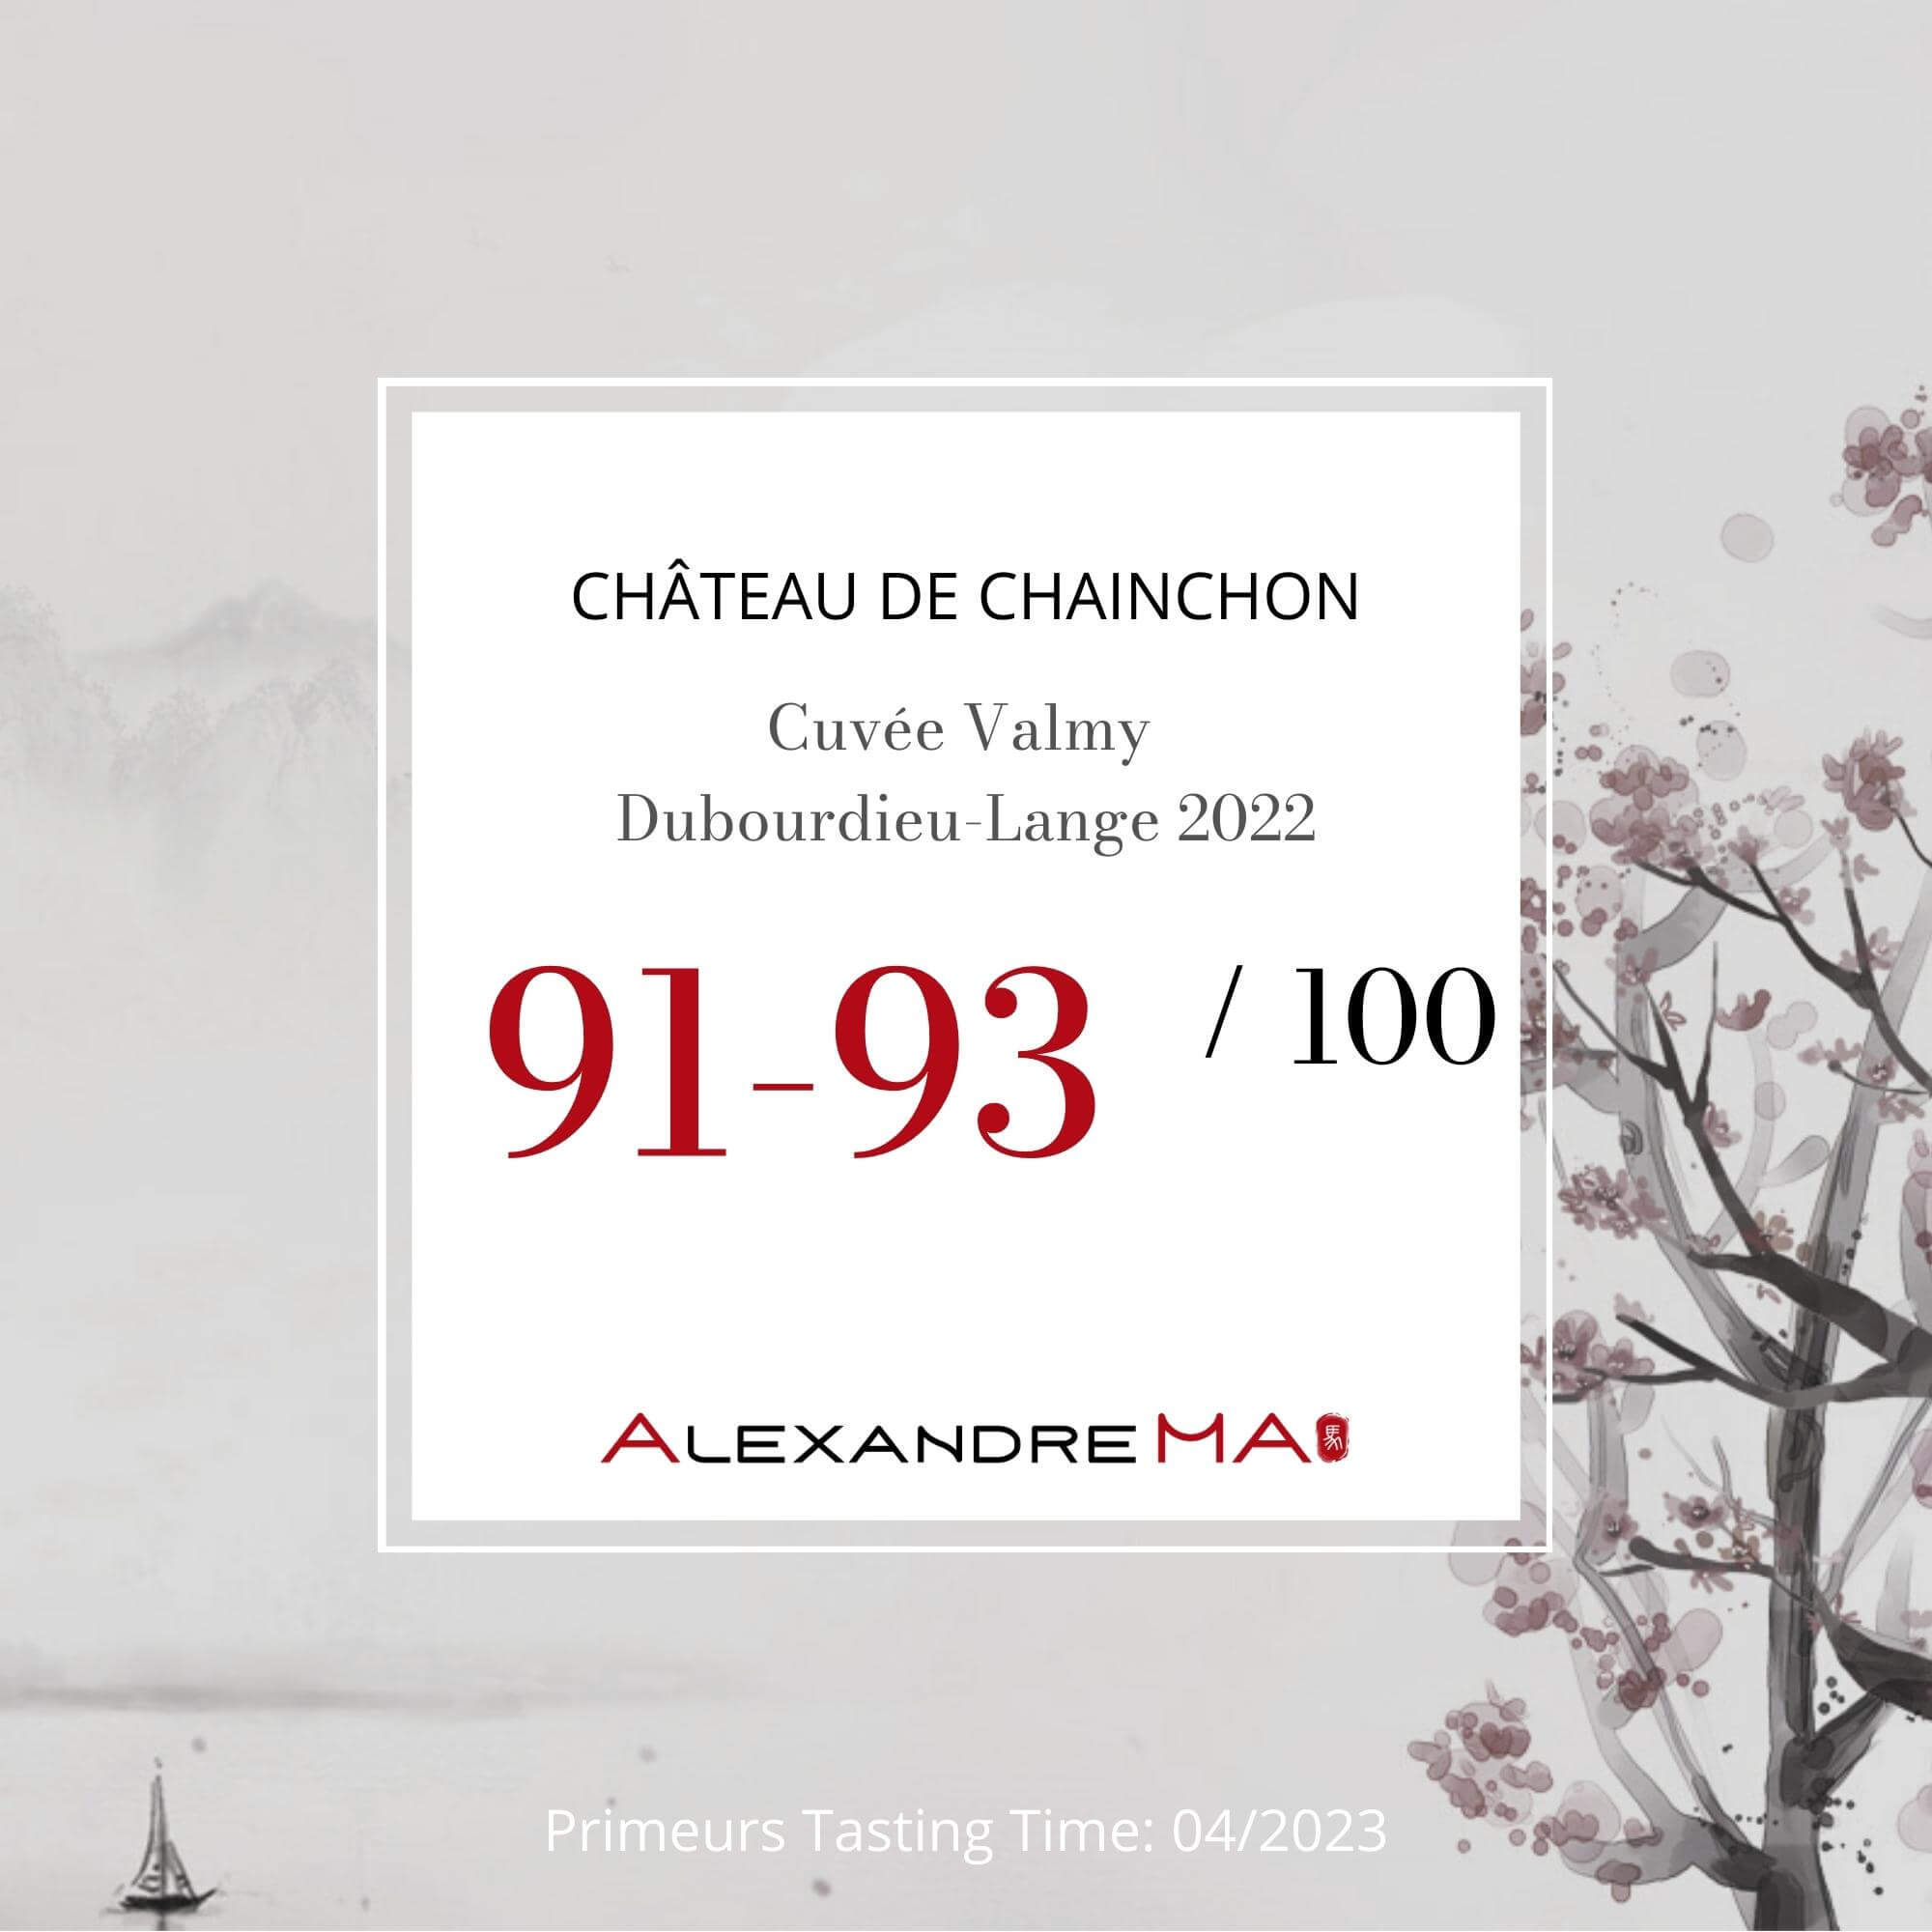 Château de Chainchon-Cuvée Valmy Dubourdieu-Lange 2022 Primeurs - Alexandre MA